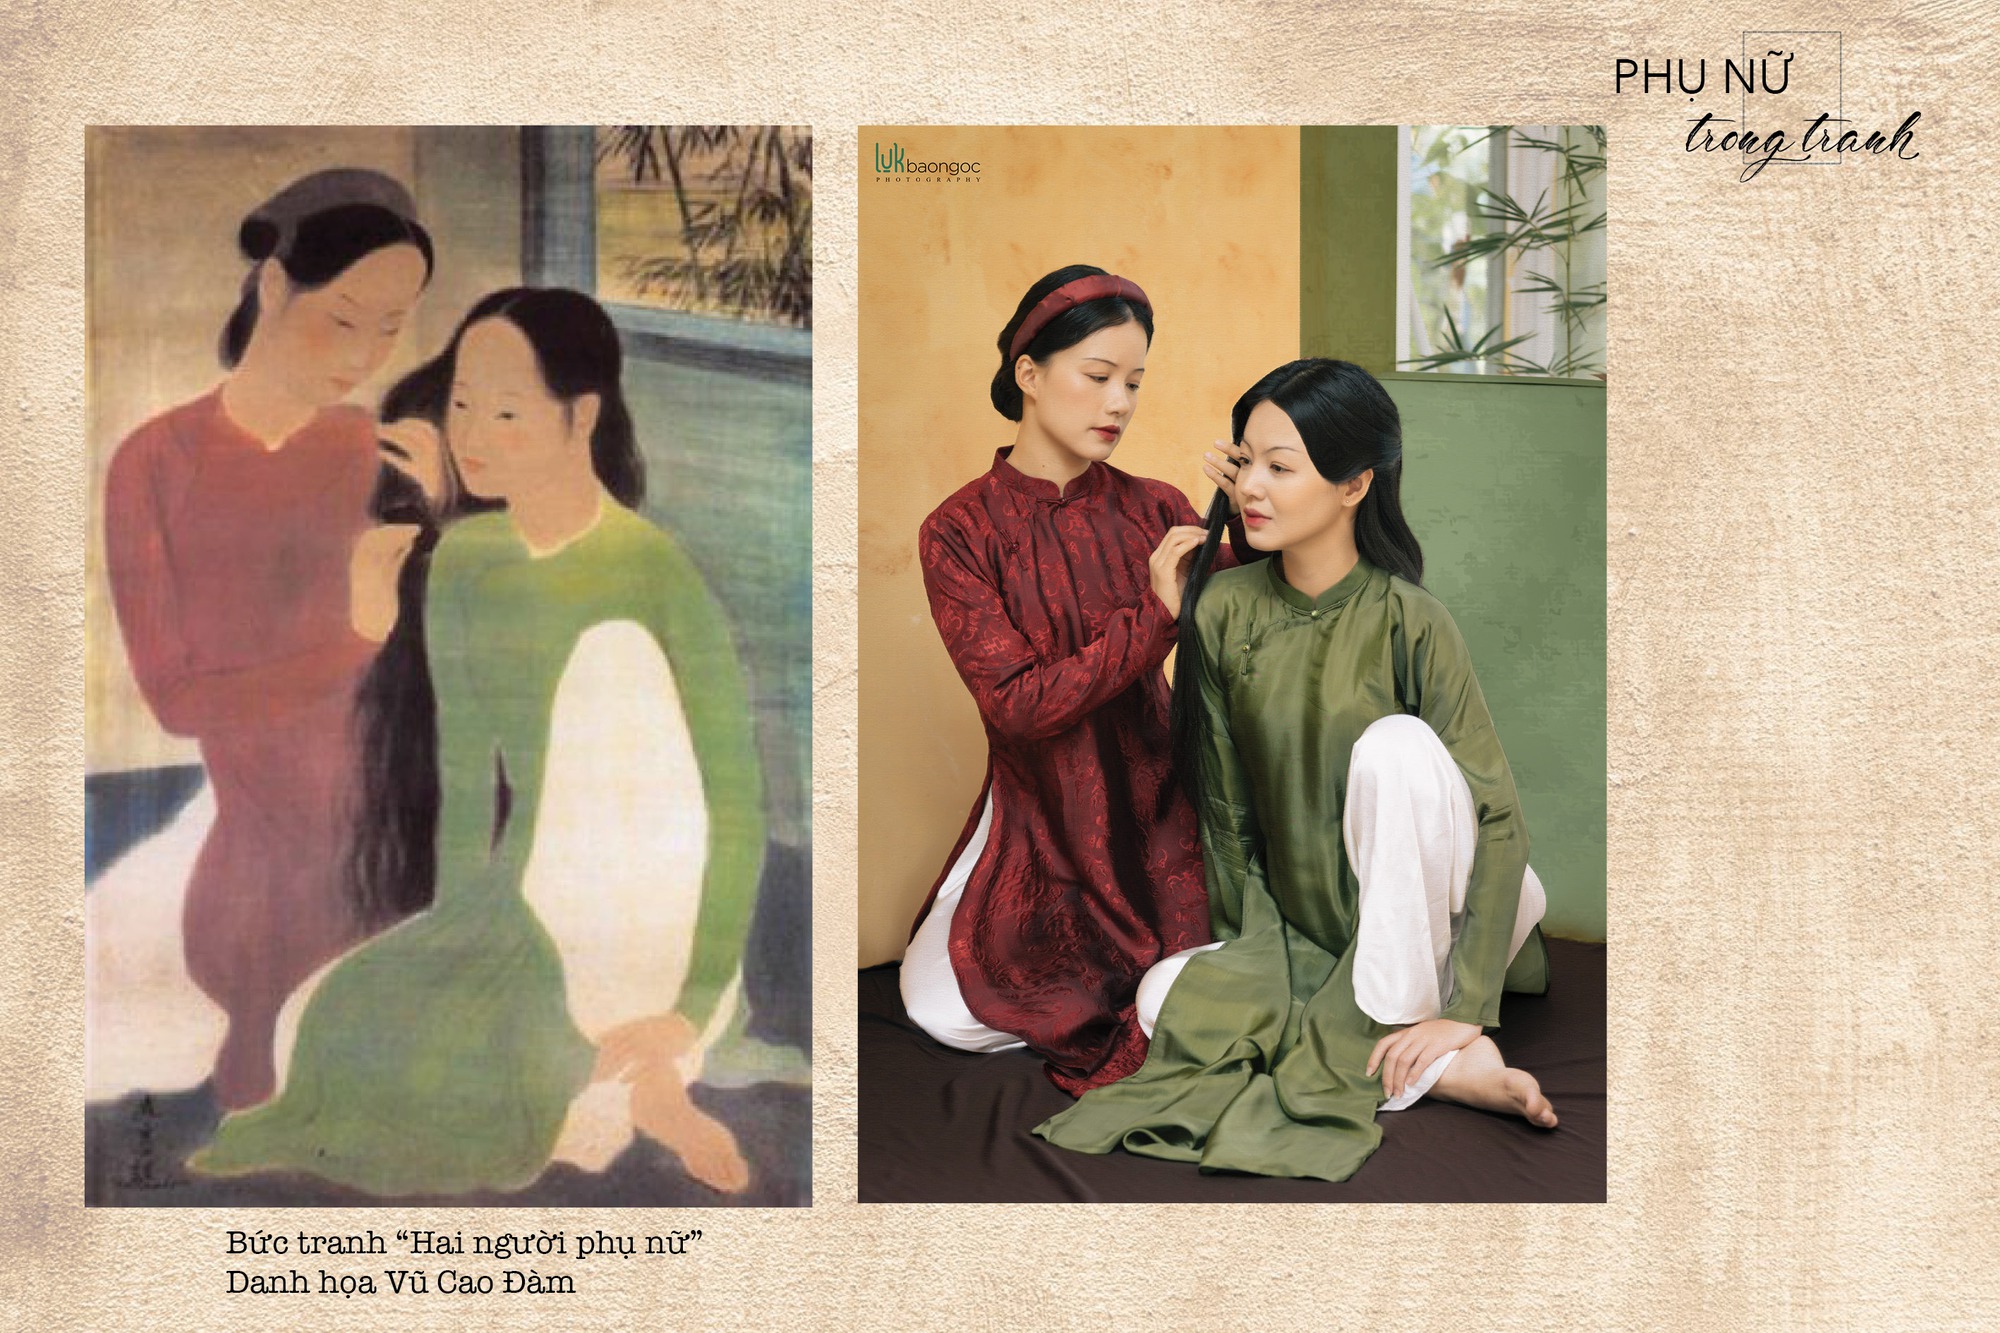 Dự án “Phụ nữ trong tranh”: Khi hội họa và nhiếp ảnh giao thoa - Ảnh 6.